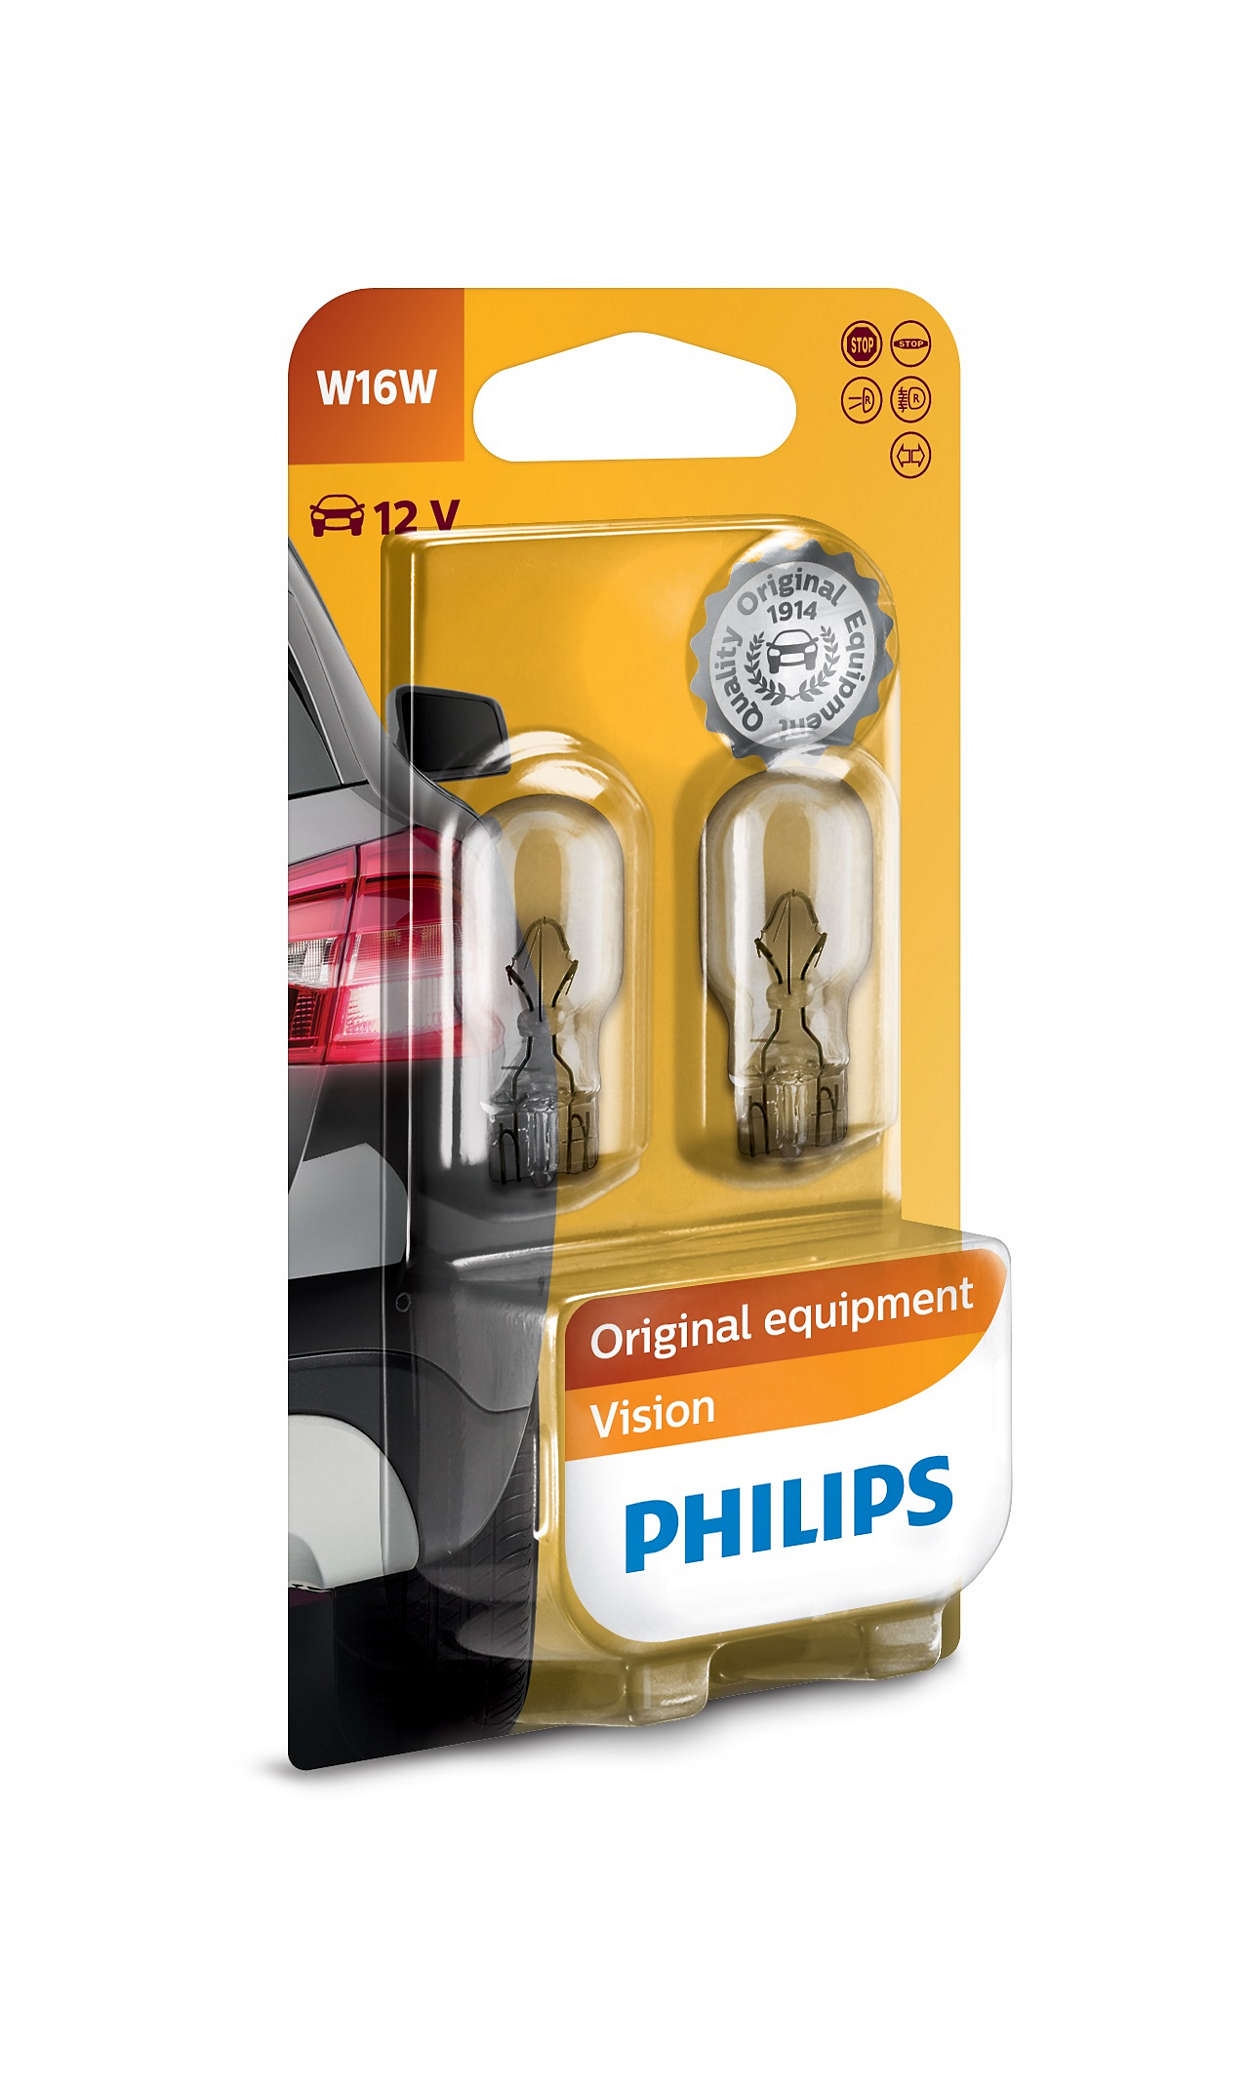 Philips W16W 12V 